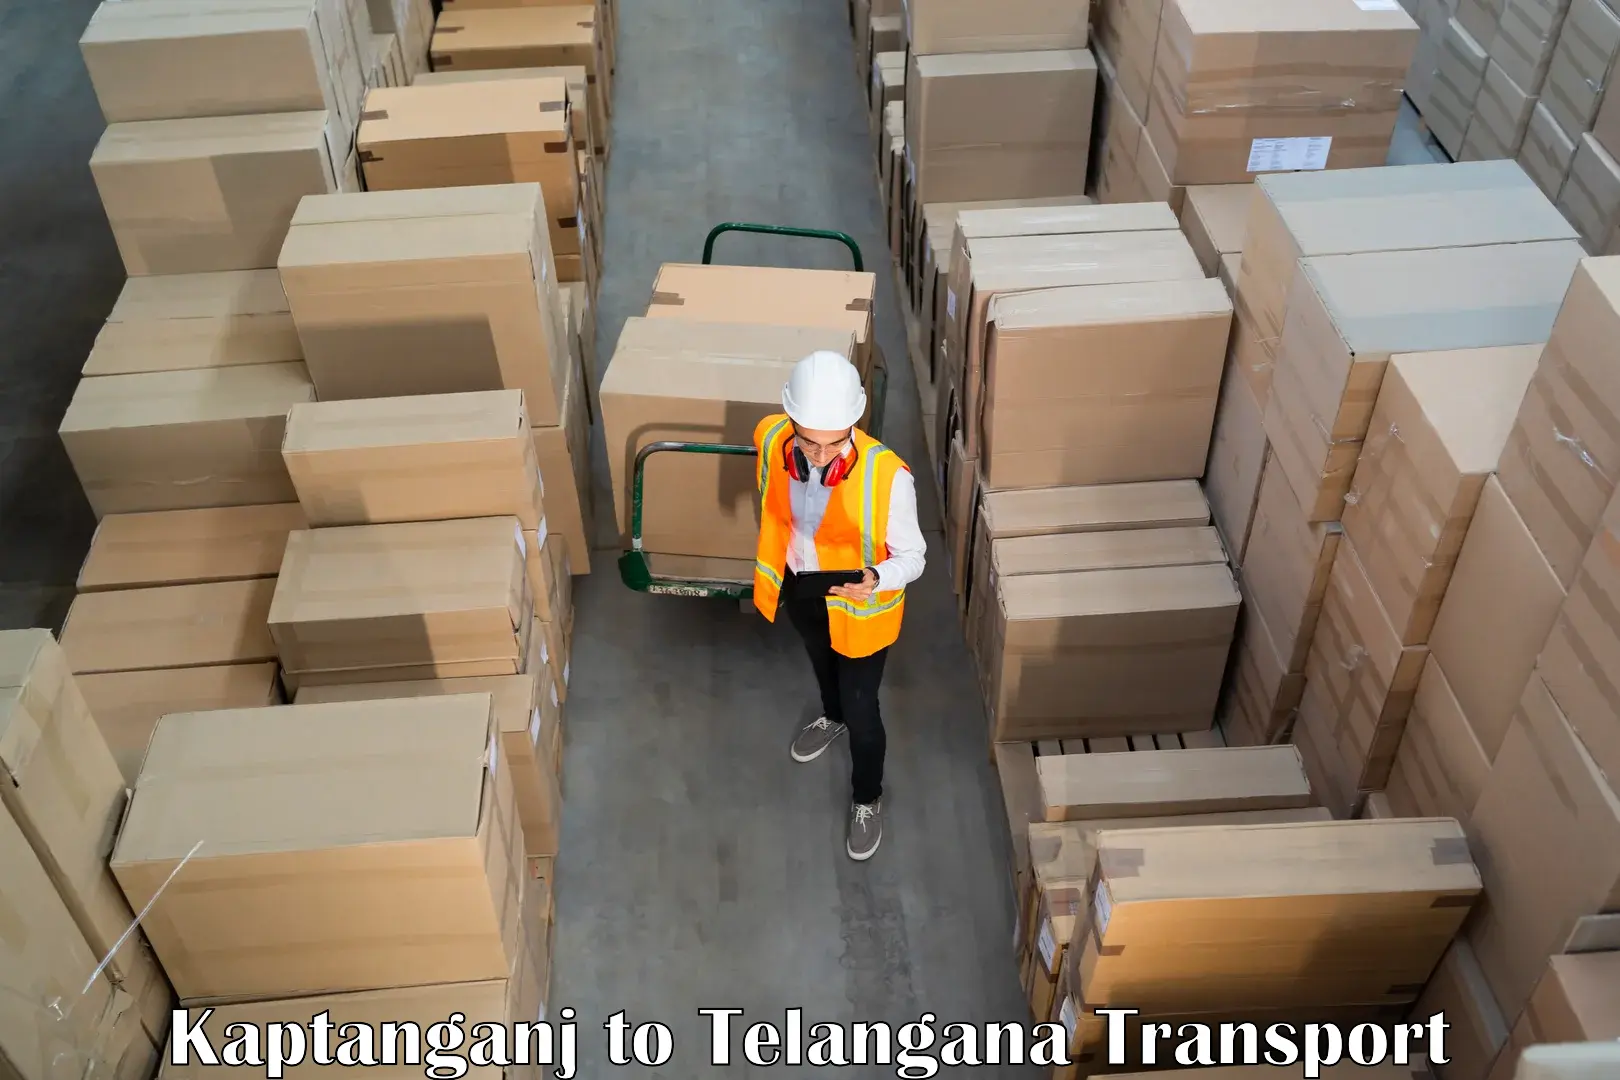 Commercial transport service Kaptanganj to Balanagar